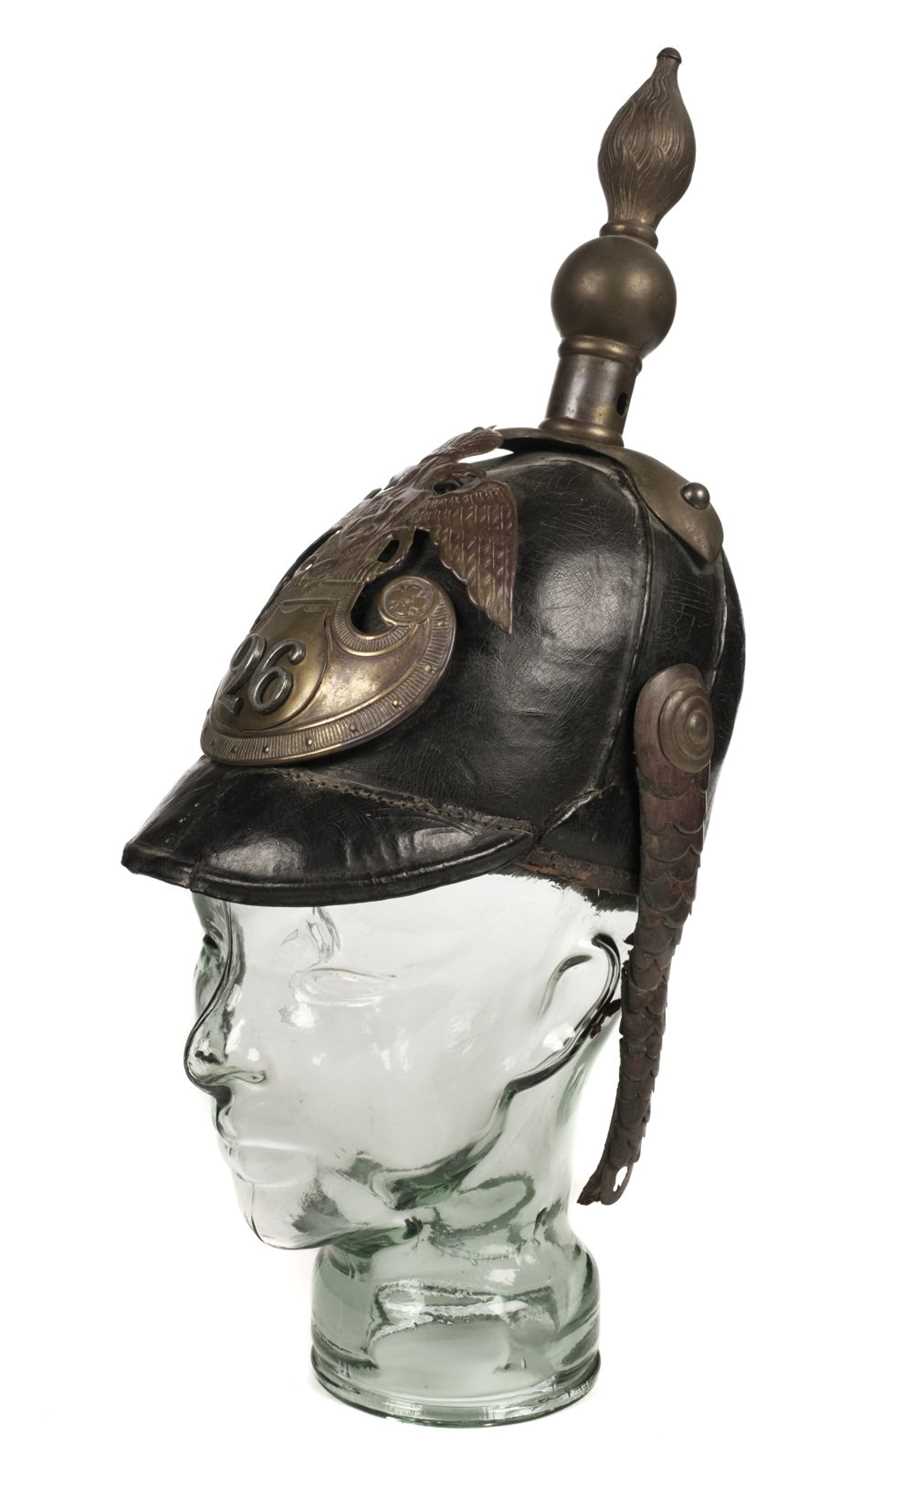 Lot 370 - Helmet. Russian Model 1844 style Helmet